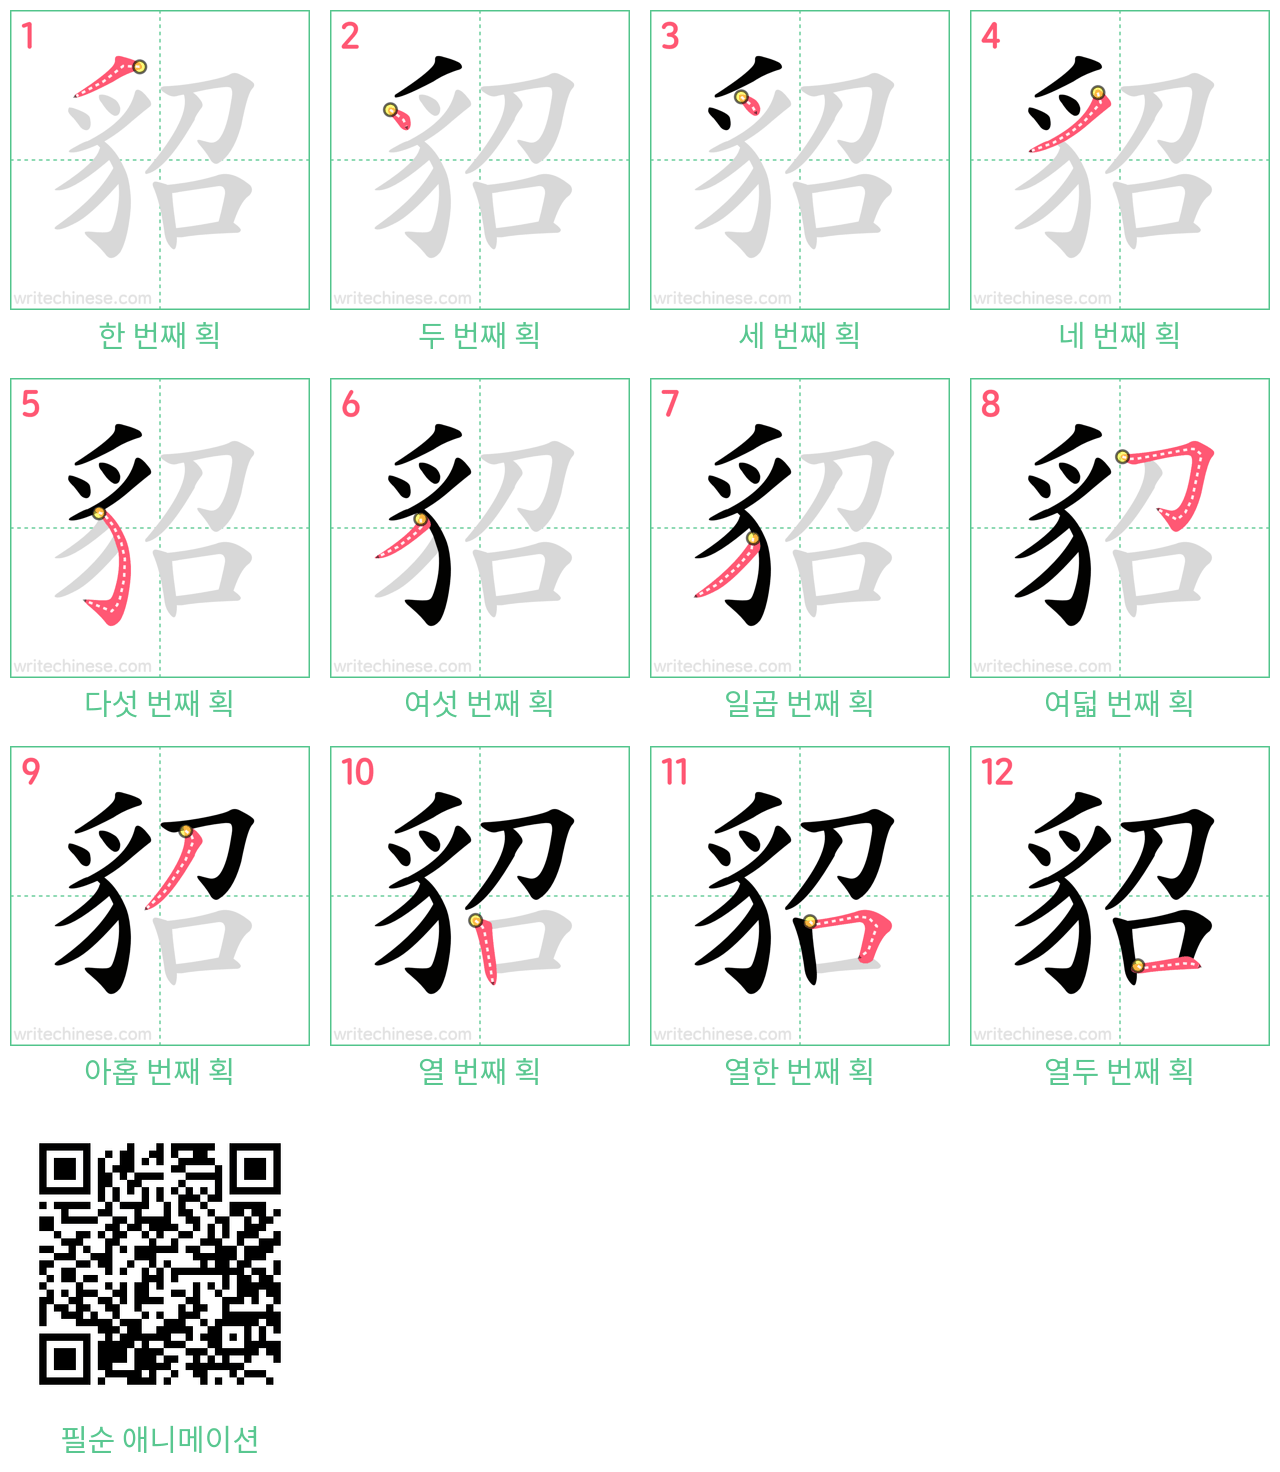 貂 step-by-step stroke order diagrams